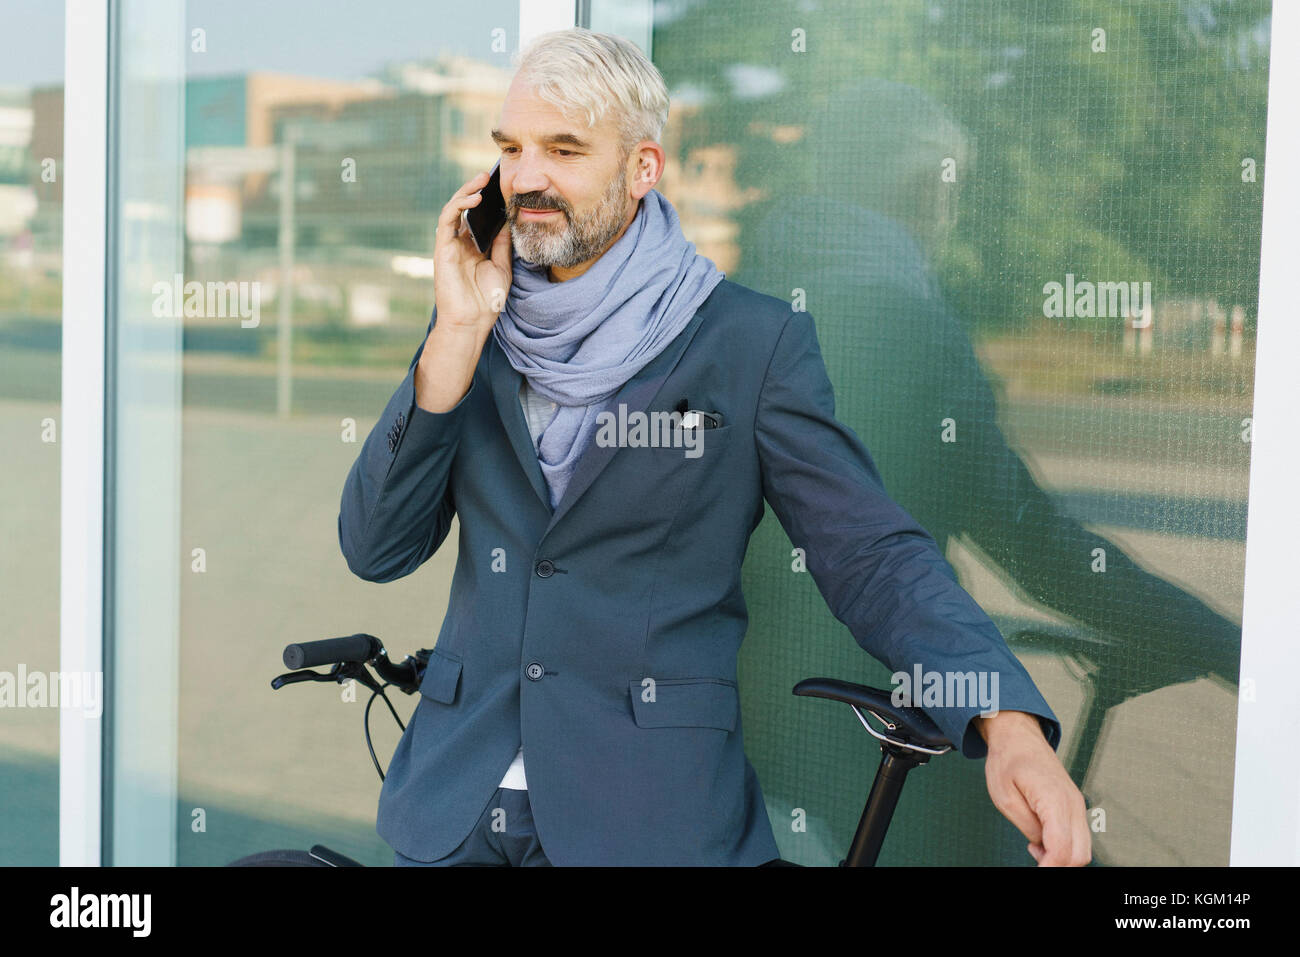 Confident businessman with bicycle talking on mobile phone debout contre l'édifice de verre Banque D'Images